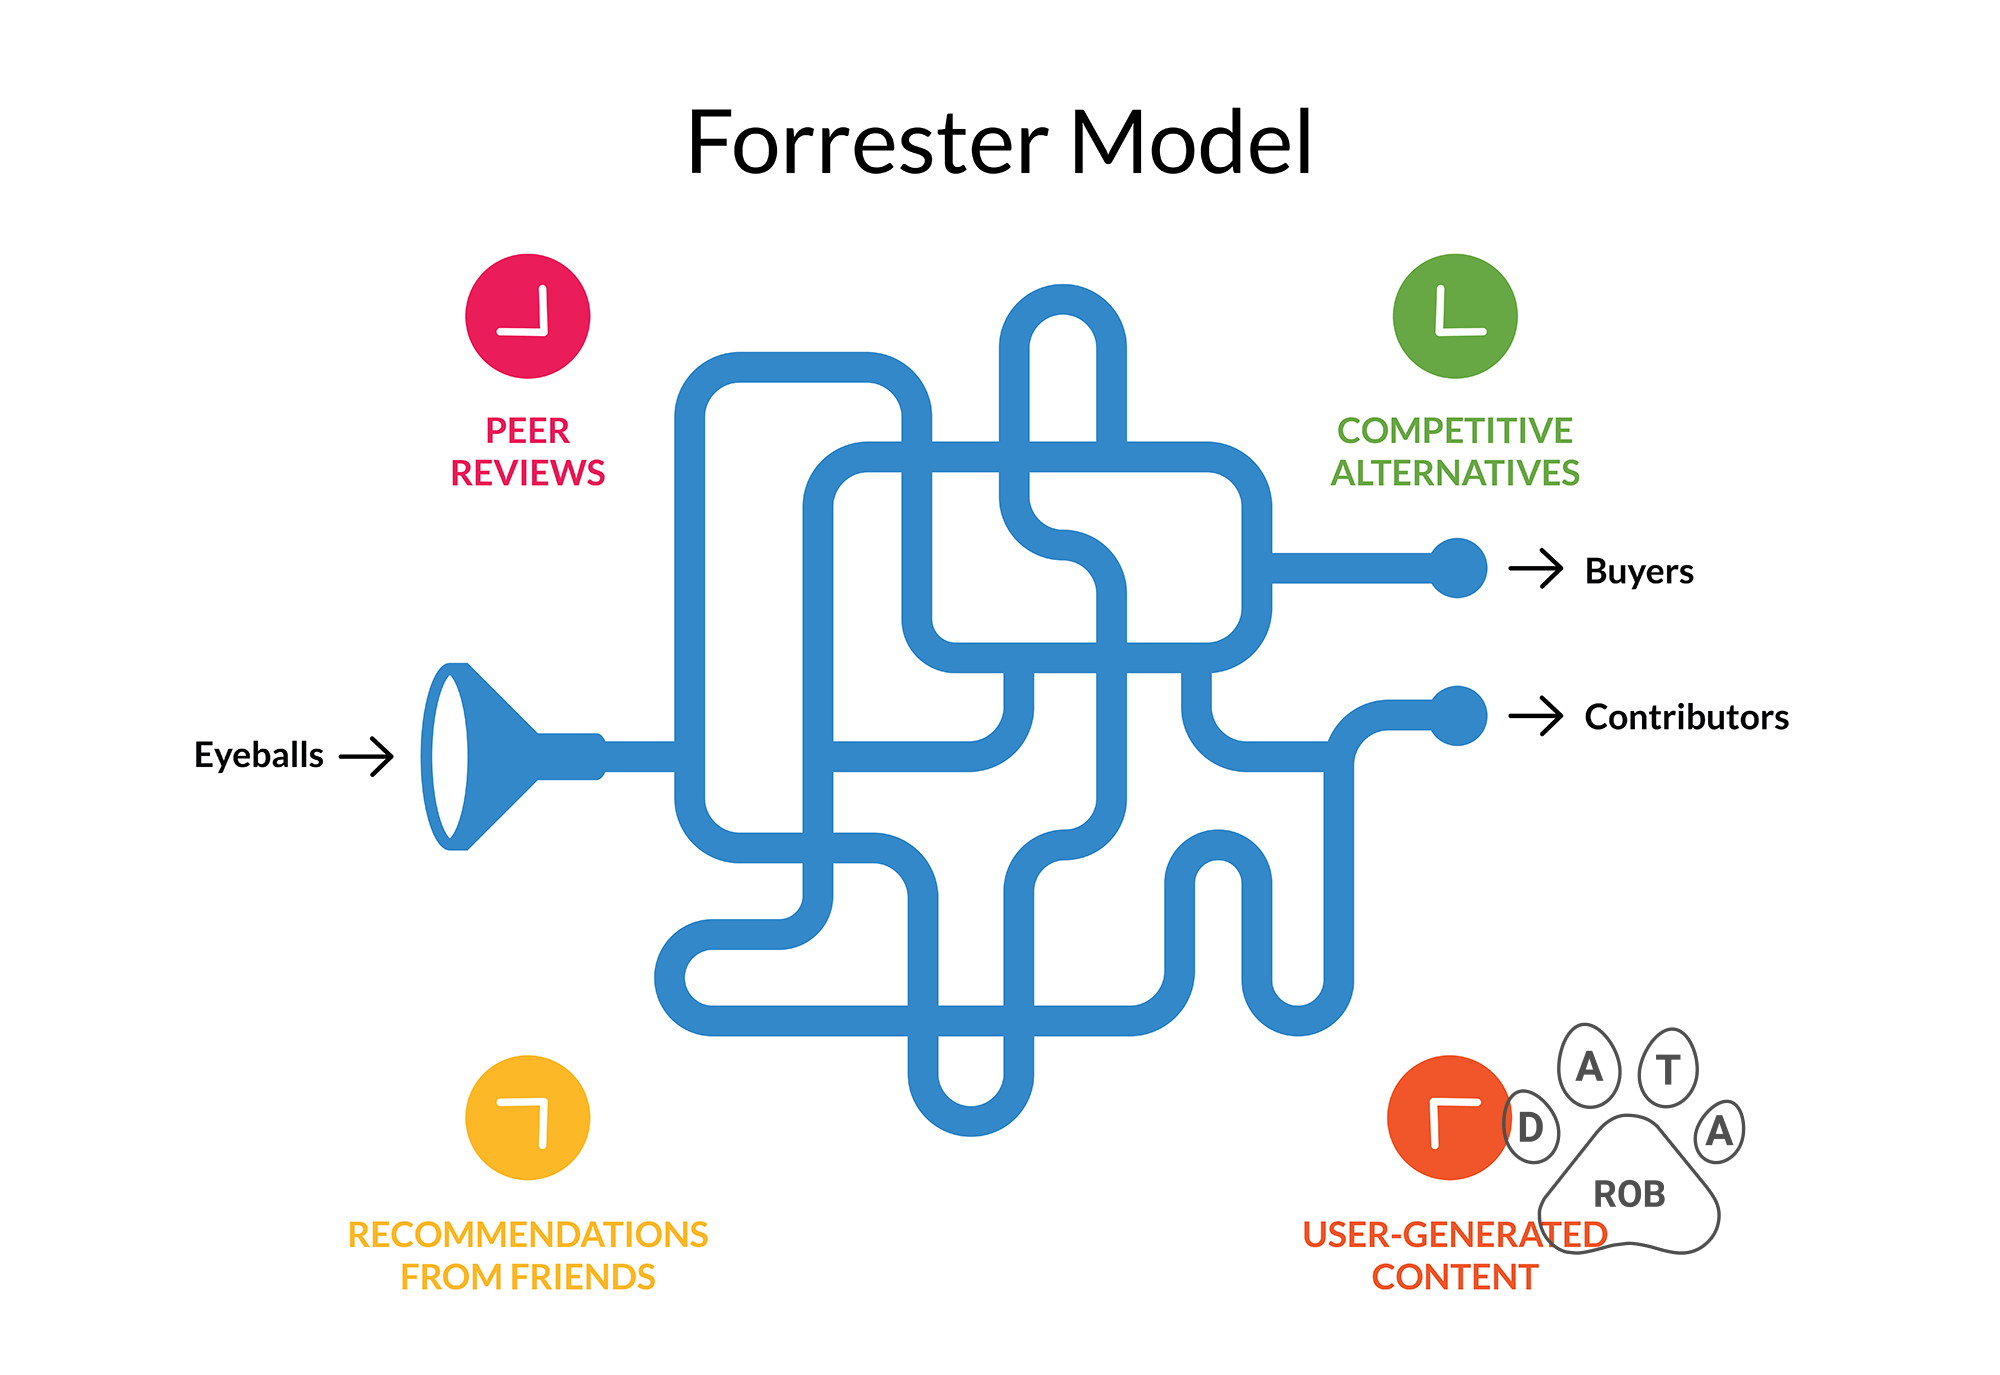 Forrester Sales Funnel Model